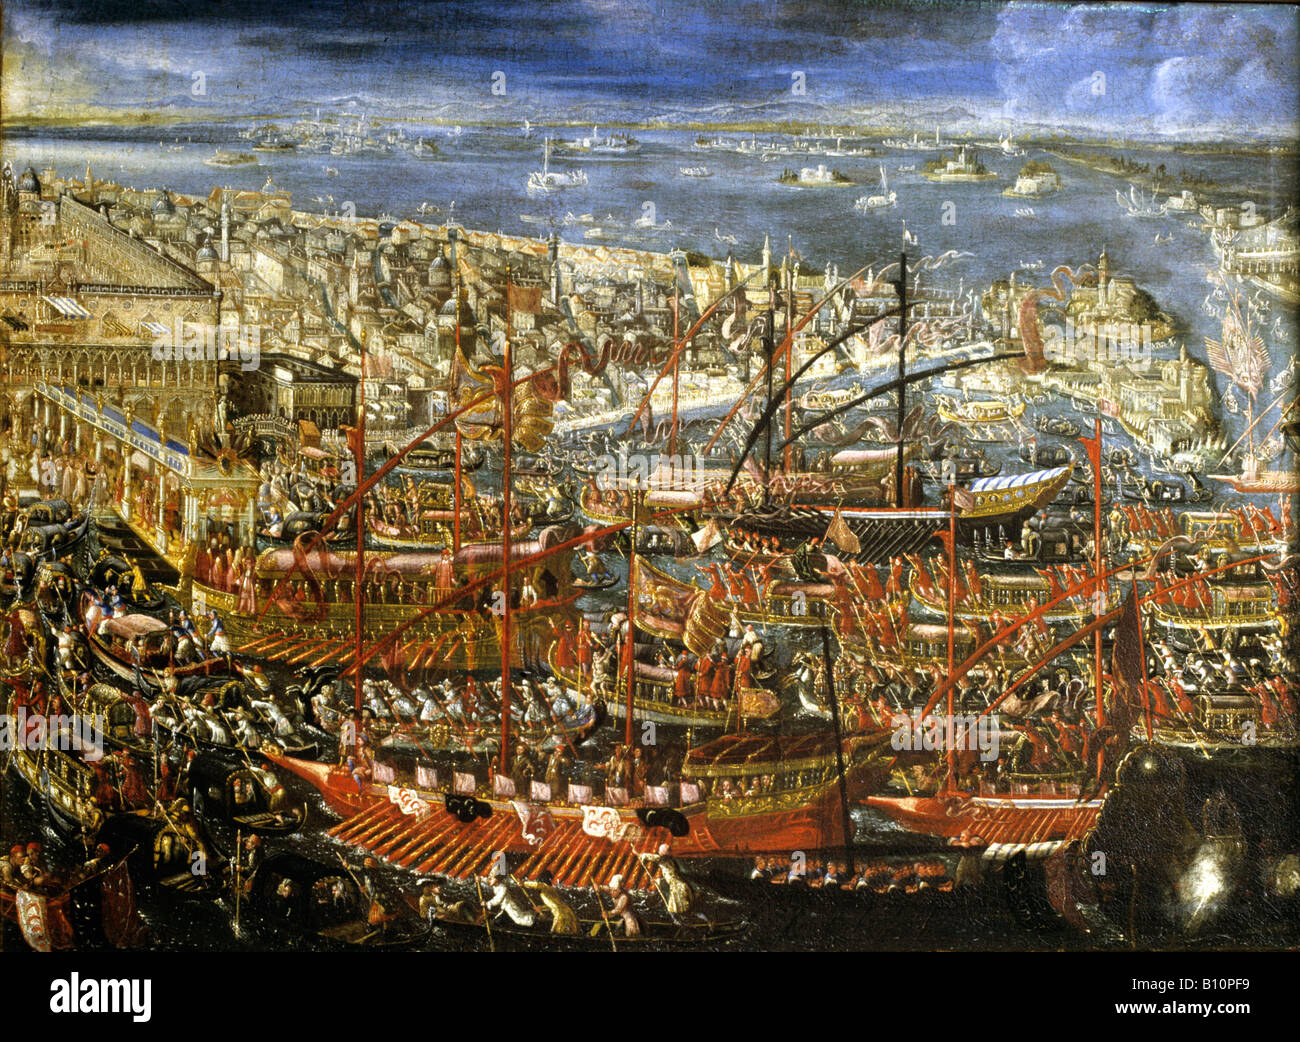 La pittura. Chiatte veneziane in una cerimonia sull'acqua del XVI secolo Foto Stock